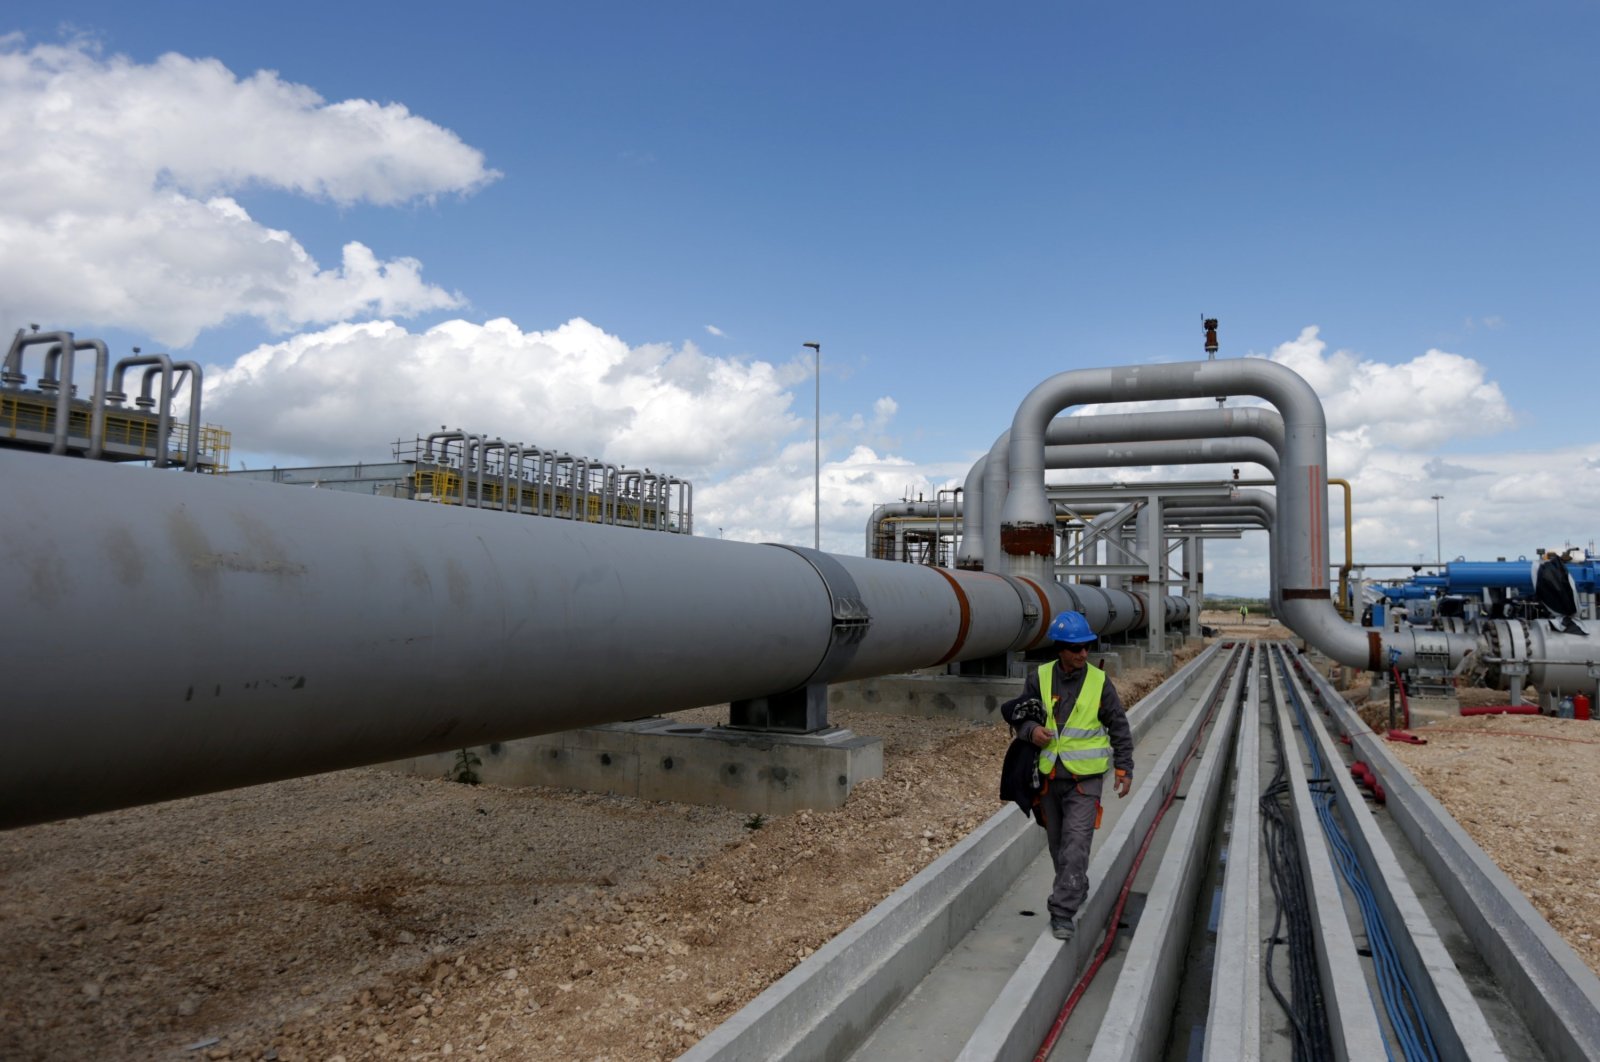 Turki dapat meningkatkan peran untuk membantu kemacetan gas alam UE